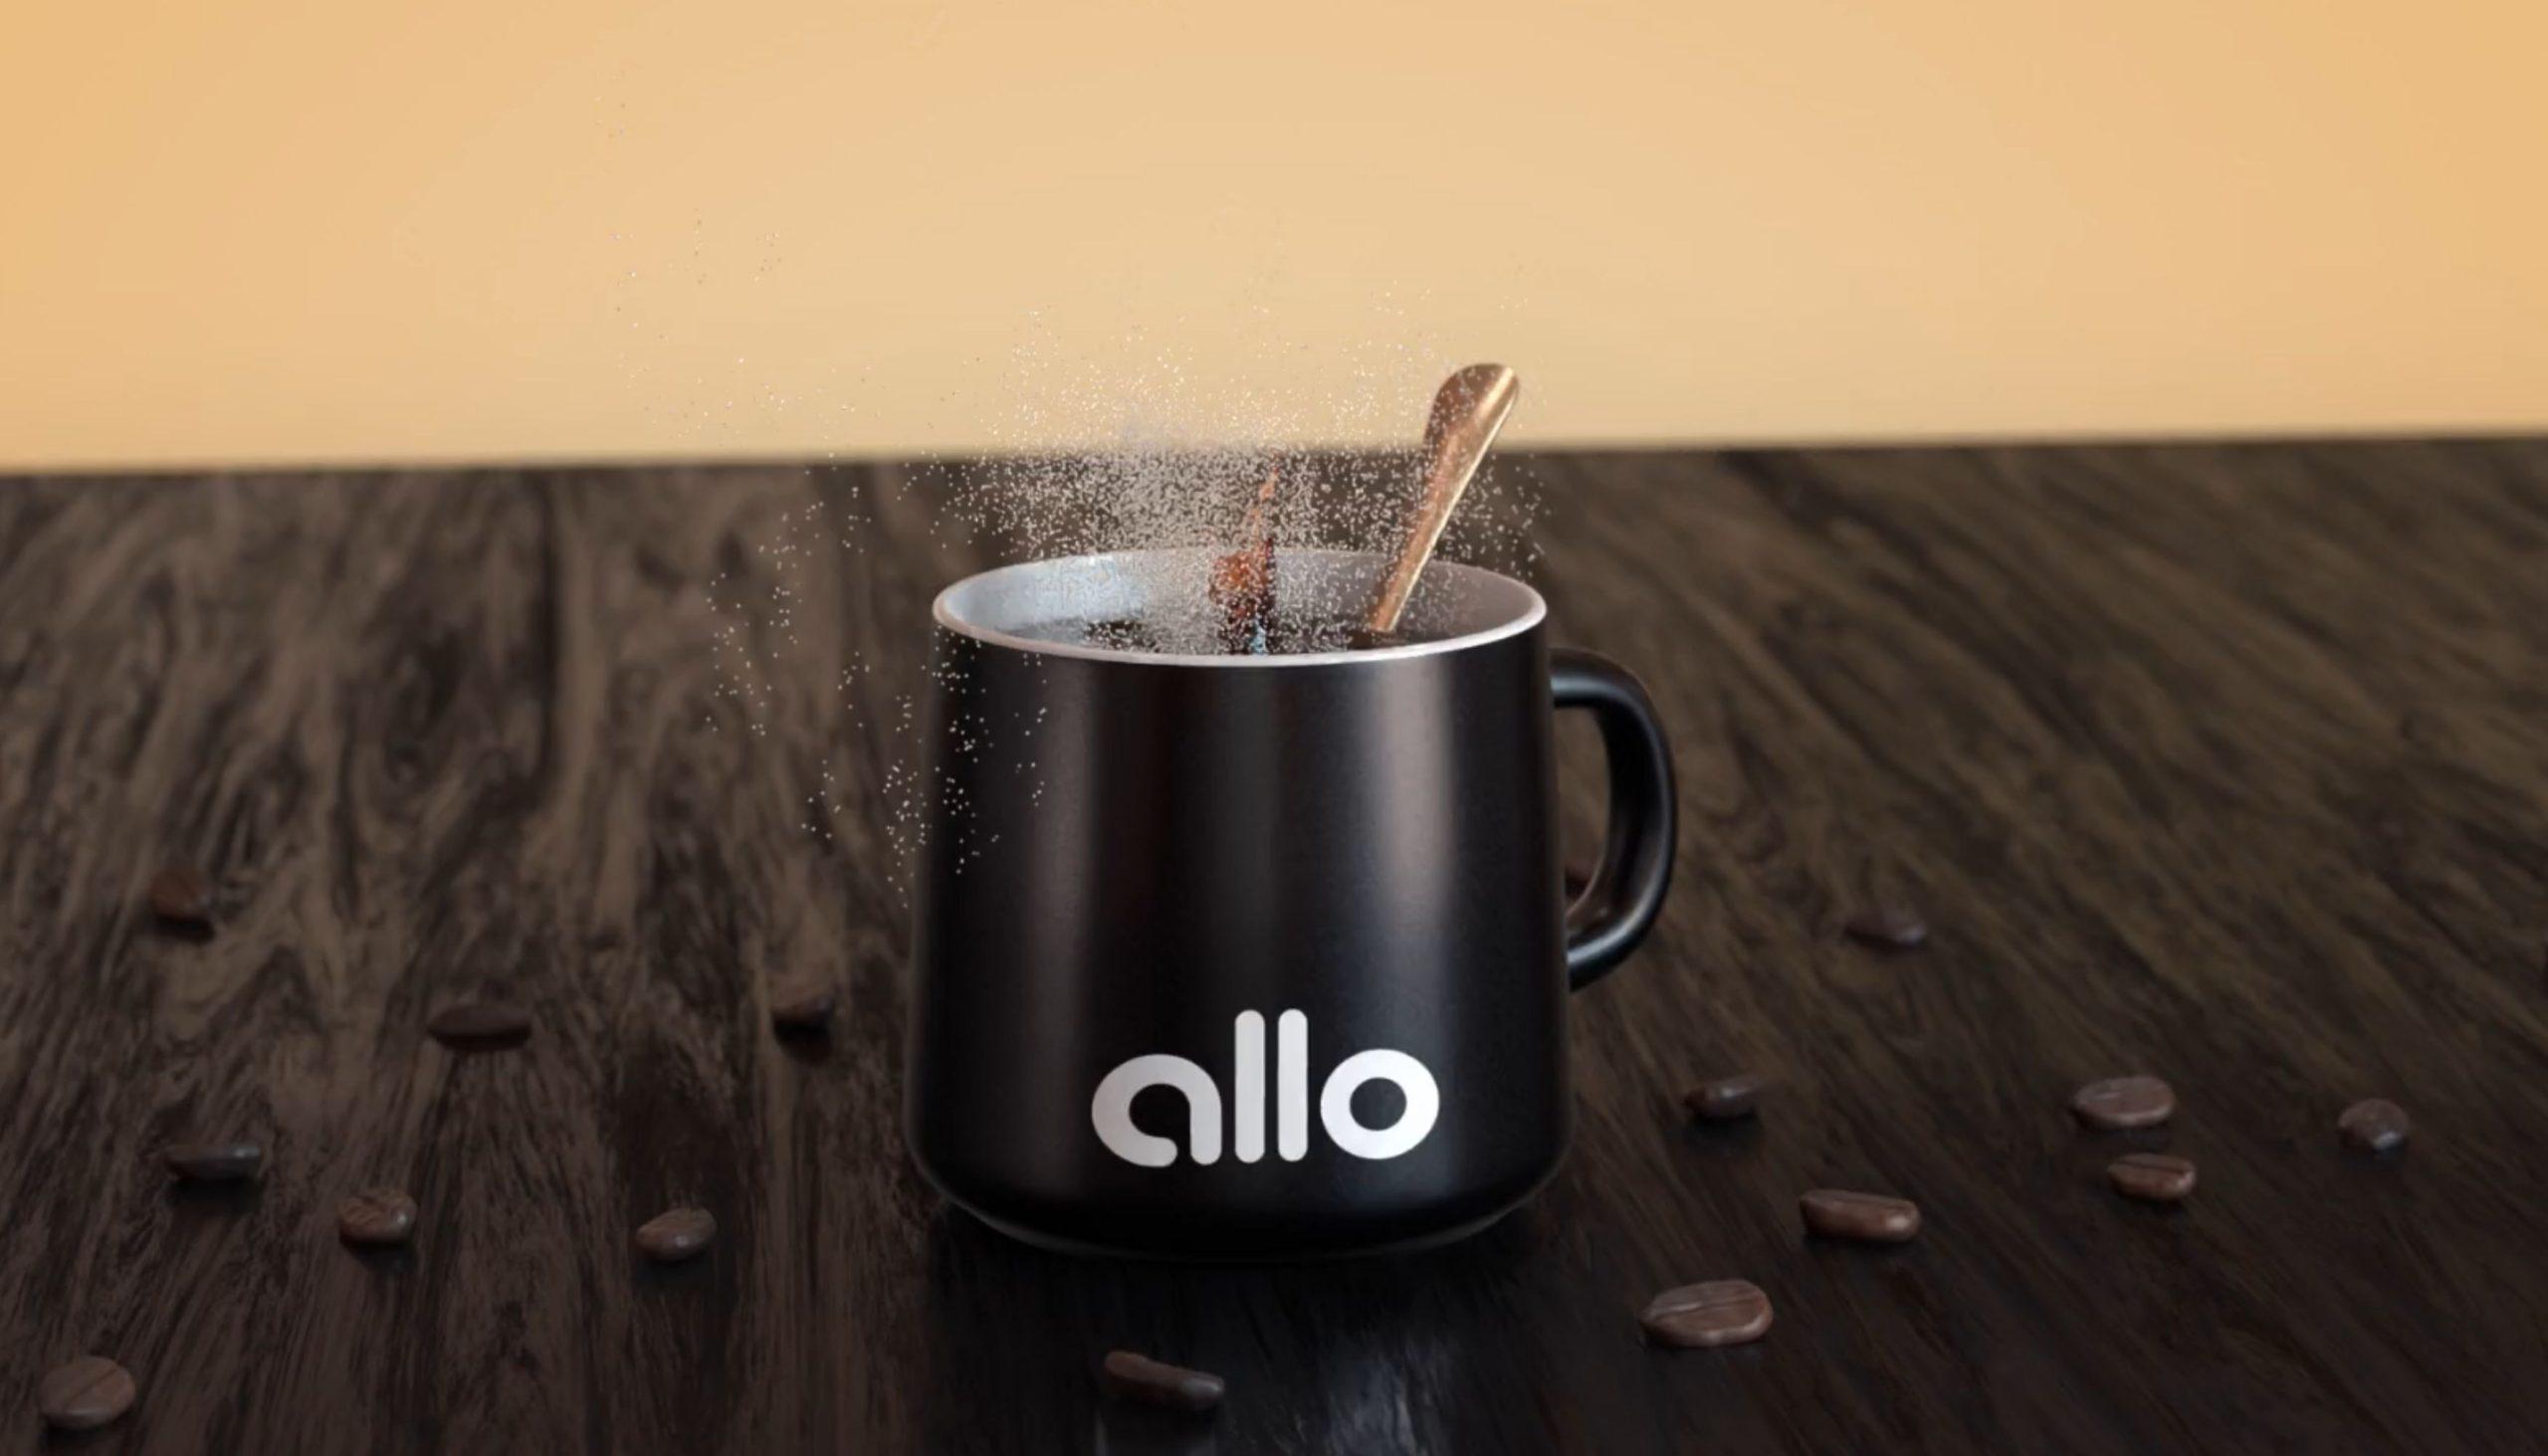 allo protein powder for coffee